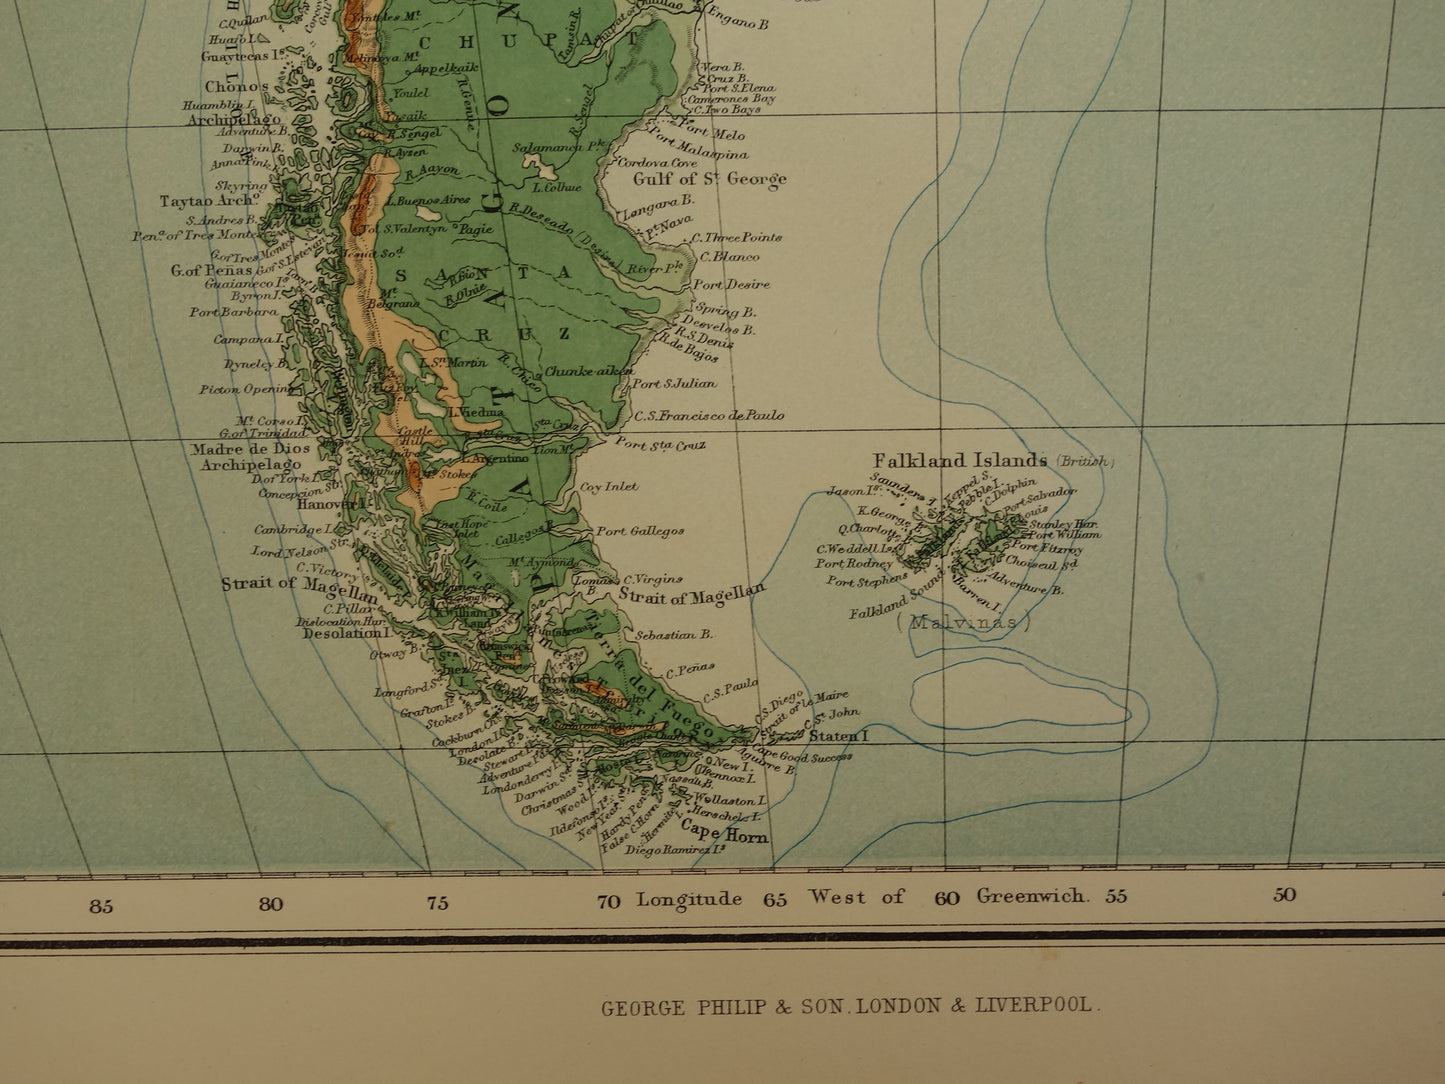 ZUID AMERIKA grote oude kaart van Zuid-Amerika 130+ jaar oude landkaart van continent uit 1890 originele vintage hoogtekaart